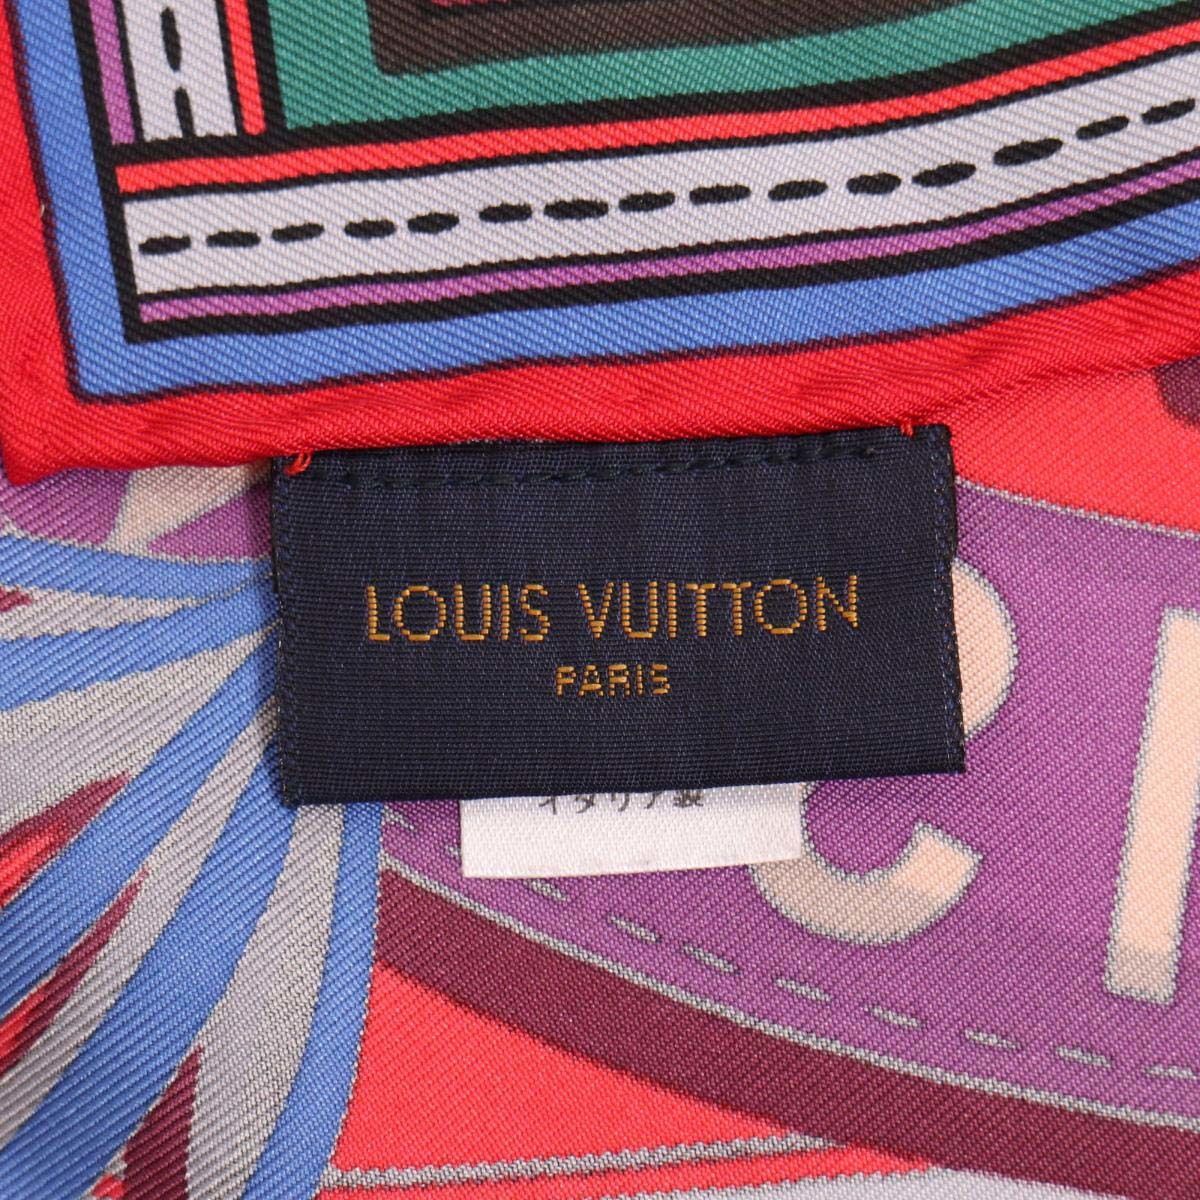 ルイヴィトン 干支 シルク スカーフ モノグラム M71430 レディース マルチカラー LOUIS VUITTON 中古 【アパレル・小物】の画像4